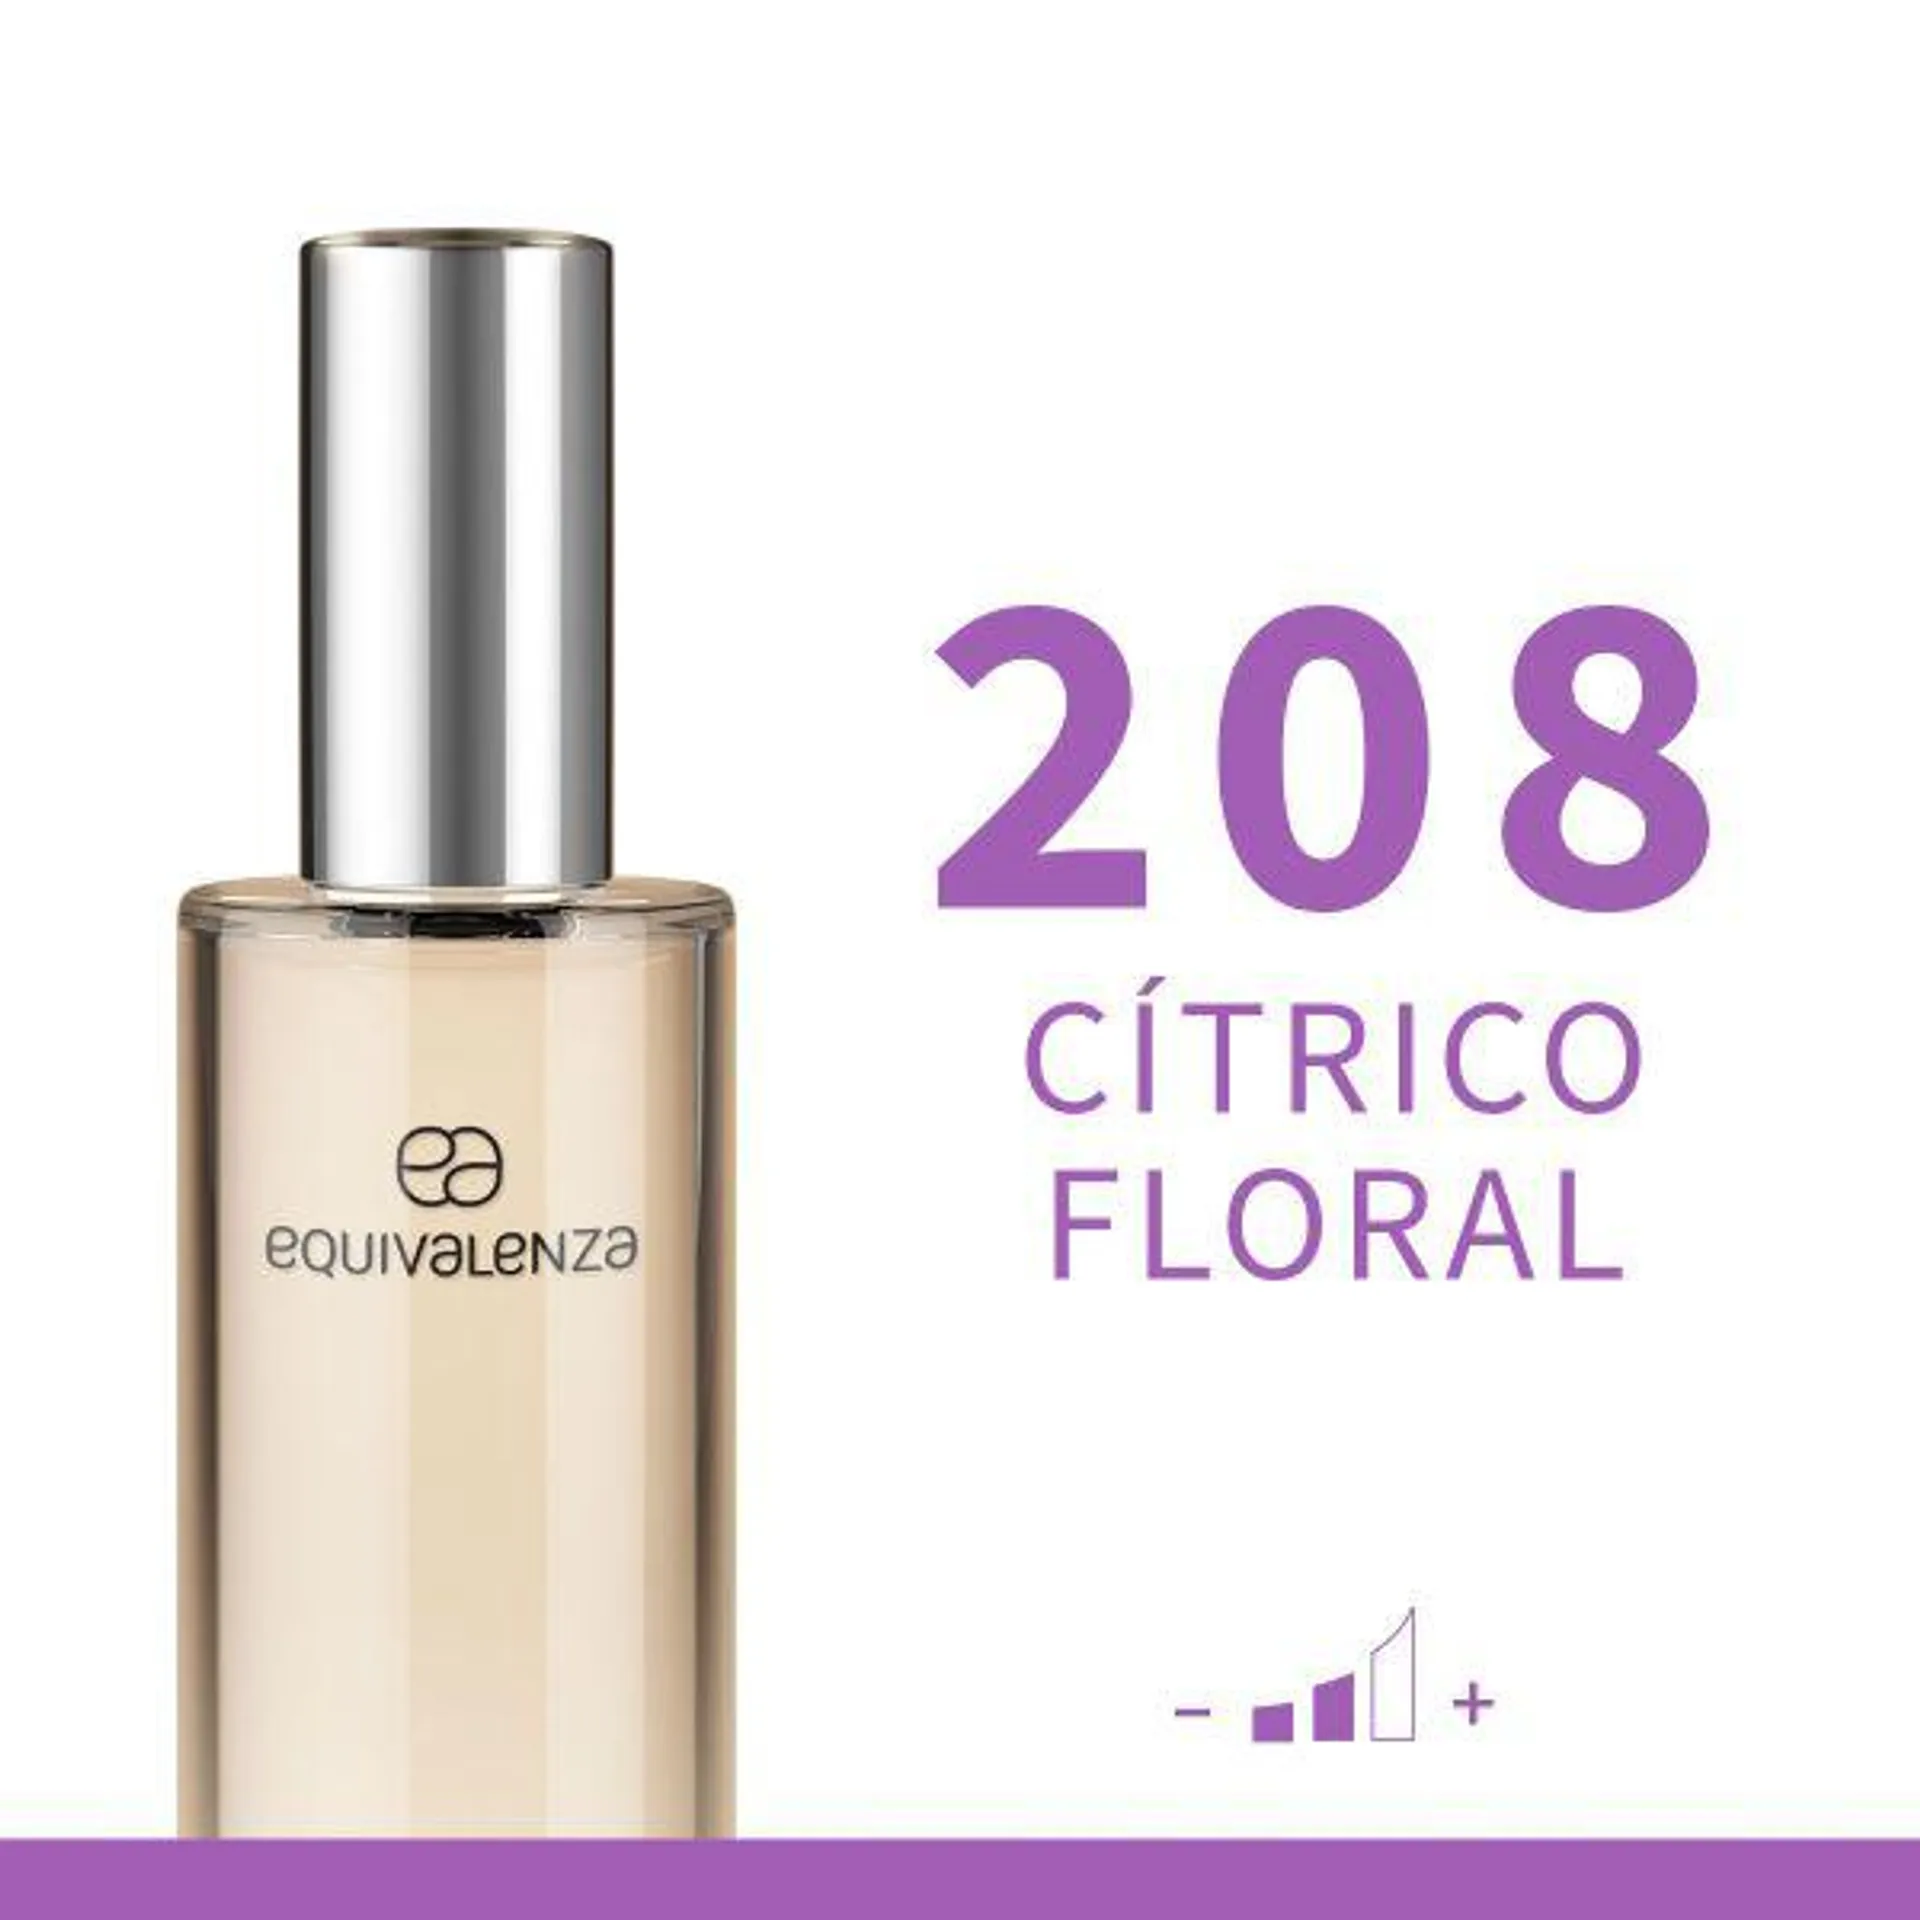 Cítrico Floral 208